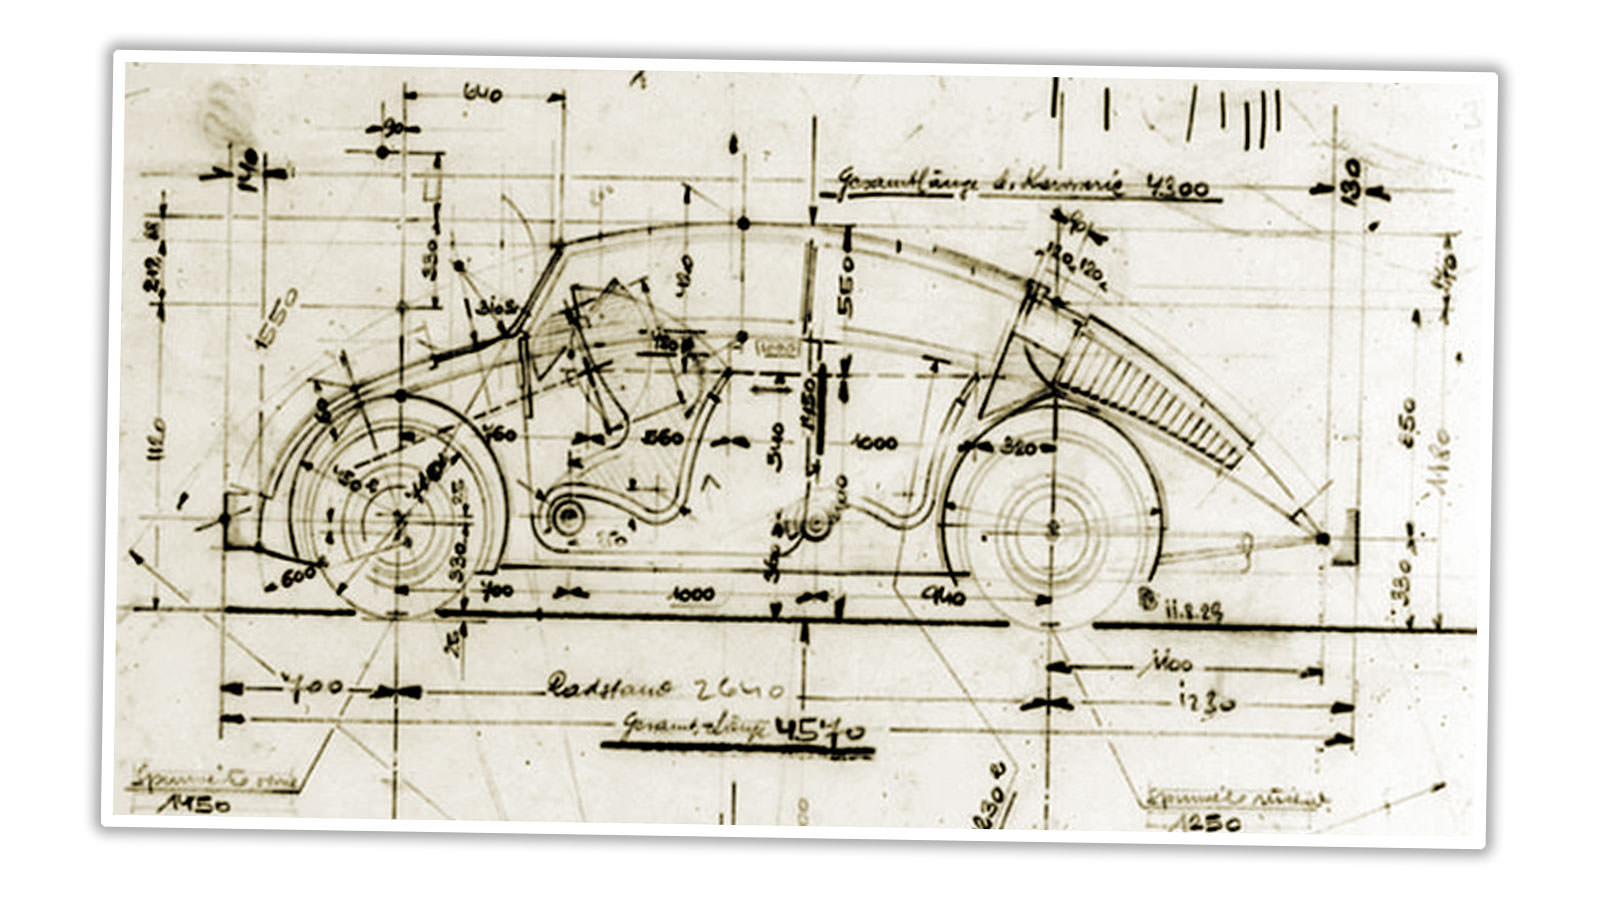 Technický nákres designu vozu Bela Barenyi, který je velmi podobný designu VW Beetle.